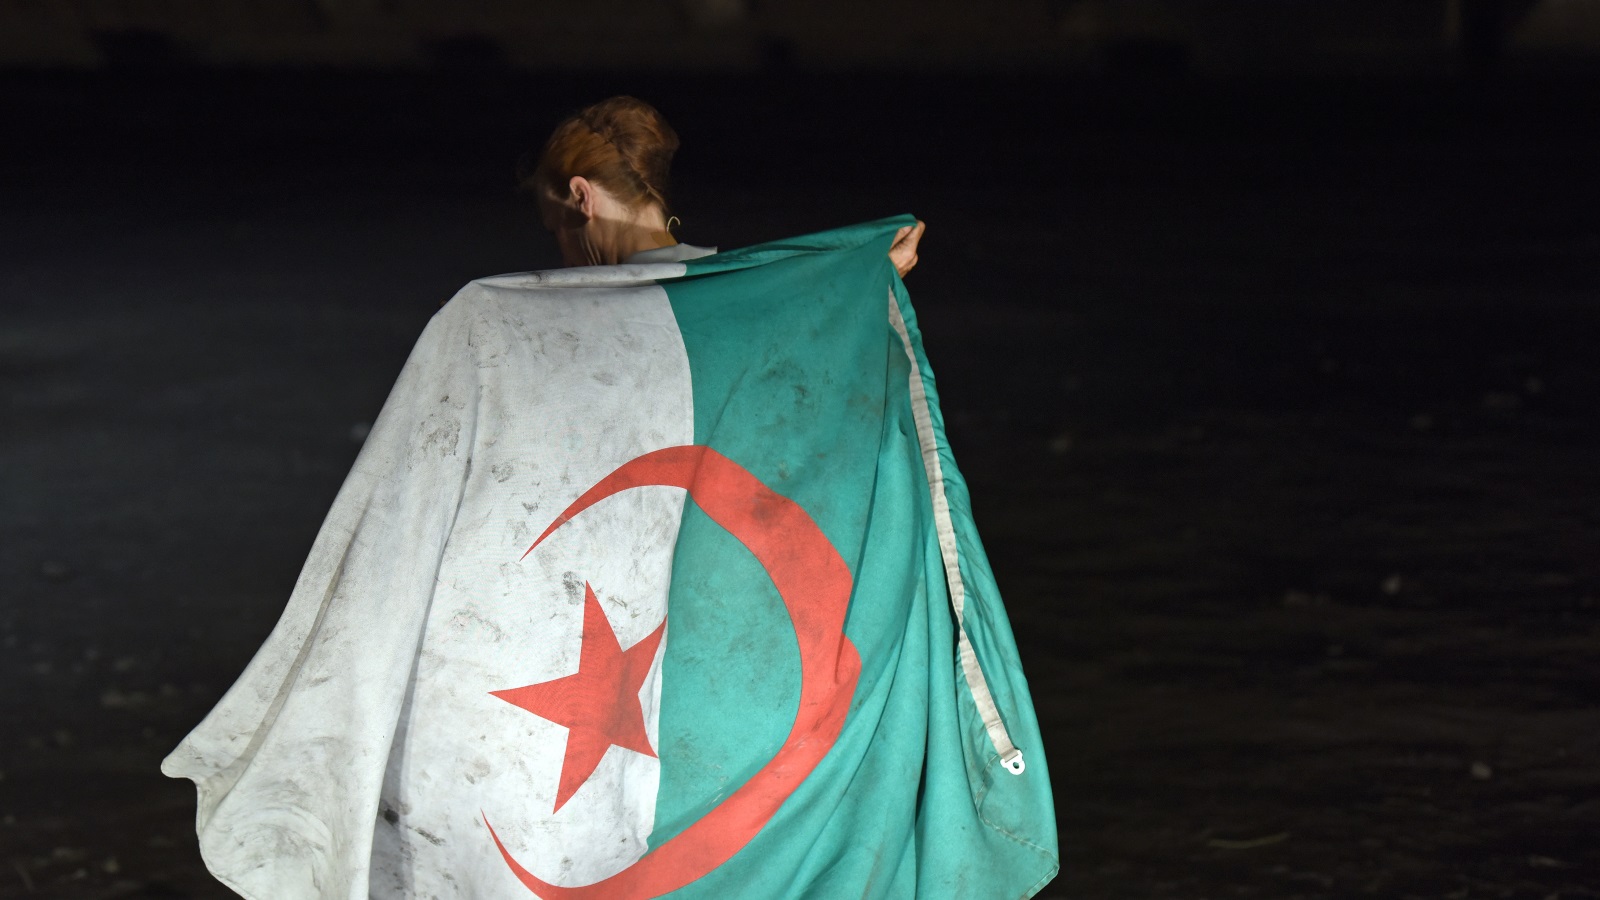 لا يرتمي الجزائريون في أحضان فرنسا إلا هروبا من المعاناة والظلم والاستبداد، فعملاء فرنسا لا زالوا يعملون، عن قصد أو عن جهالة، على تهجير الأدمغة والطاقات لتبقى الجزائر وثرواتها تحت الهيمنة الامبريالية